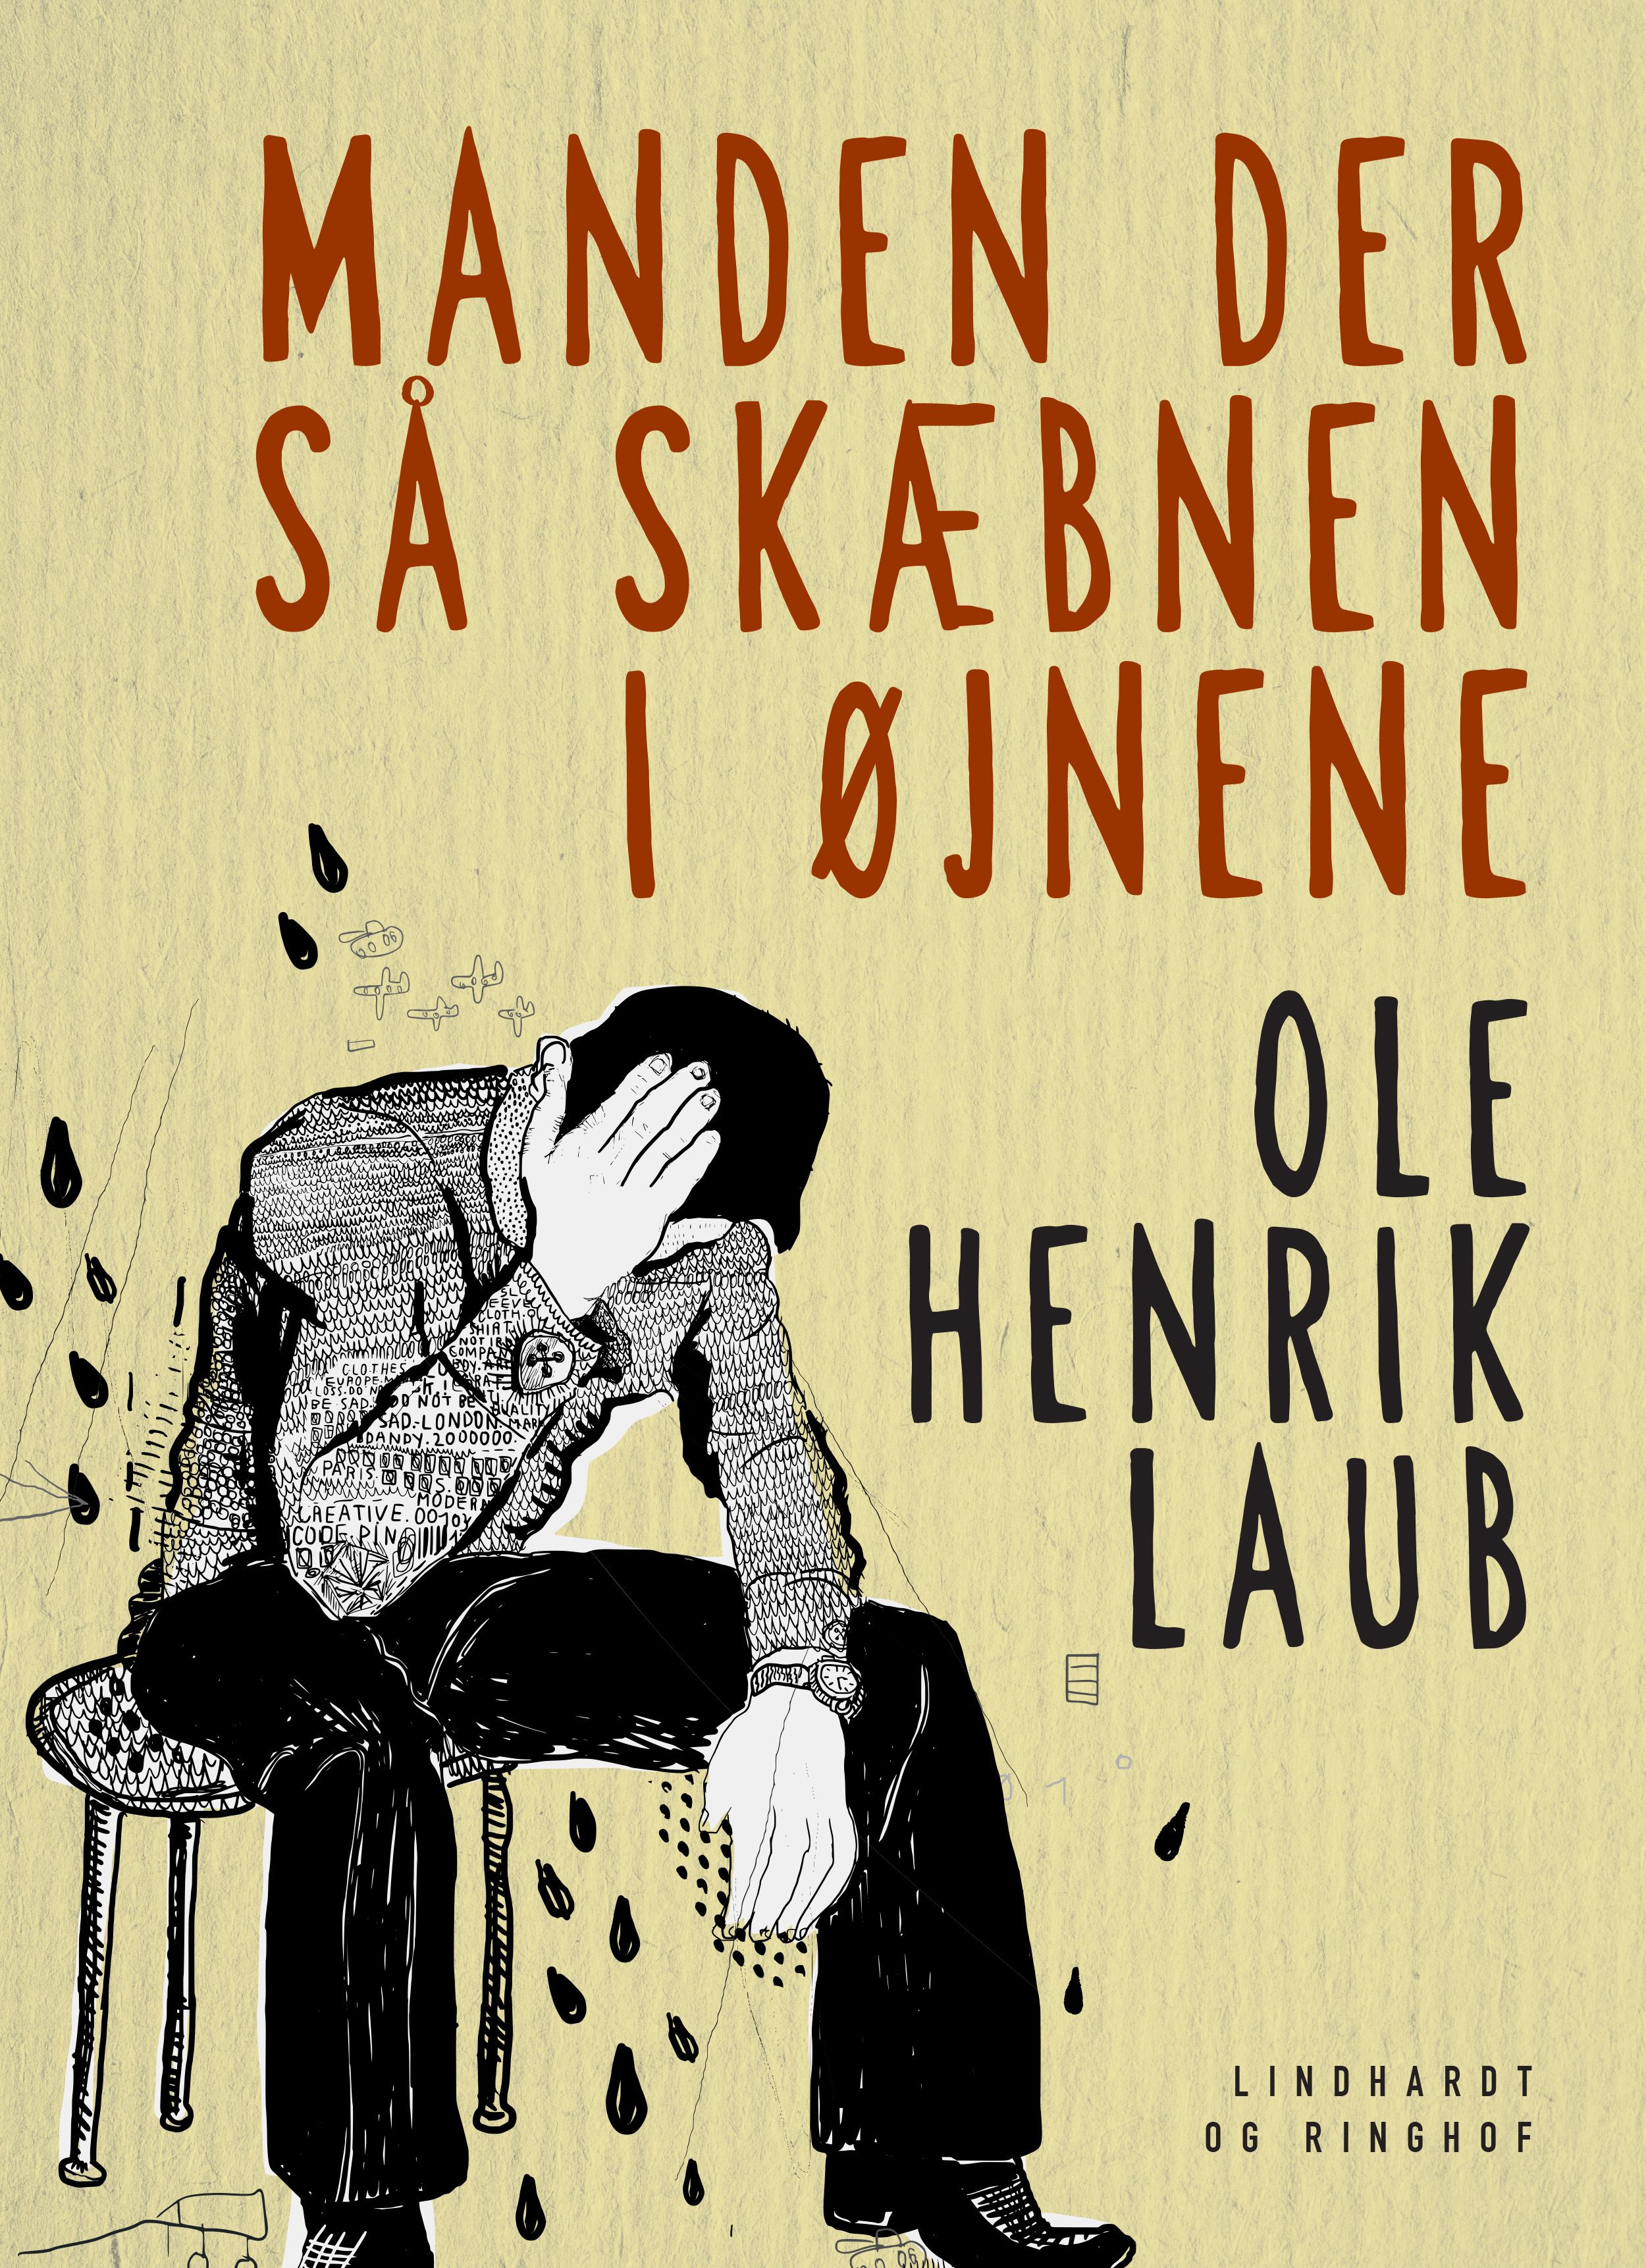 Manden der så skæbnen i øjnene, audiobook by Ole Henrik Laub